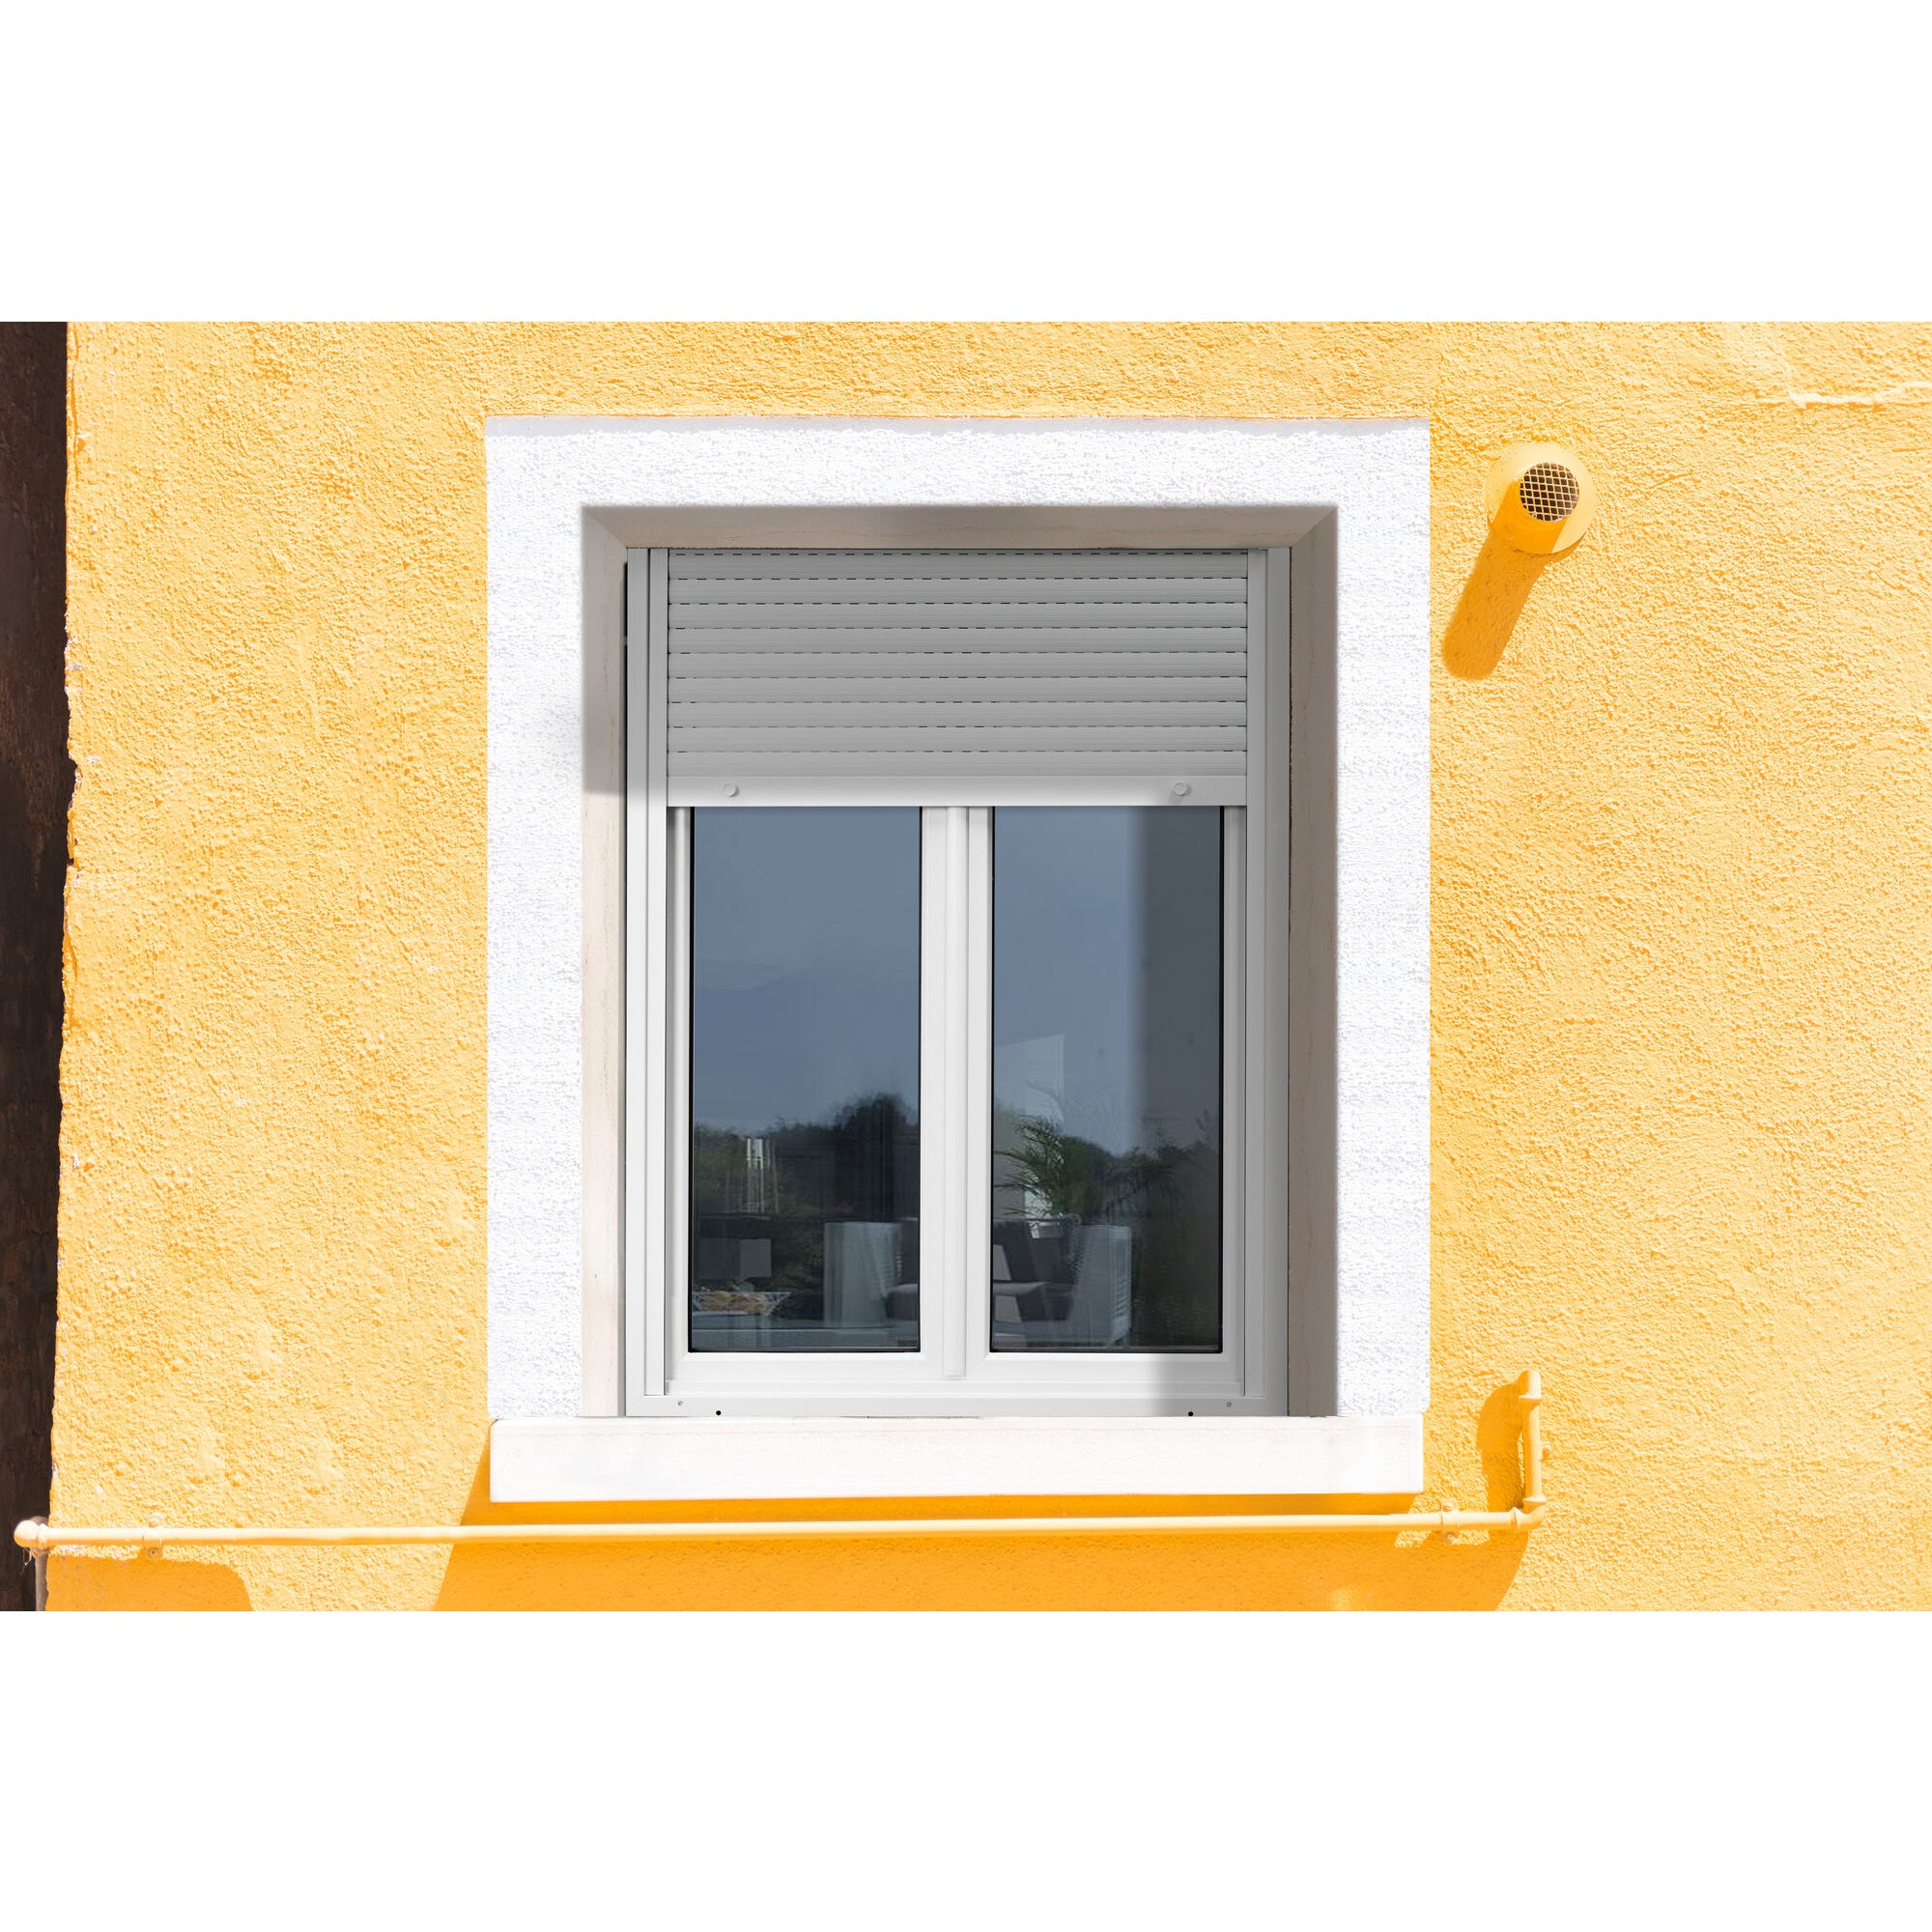 Fenêtre PVC avec volet roulant intégré monobloc Ob 2 vantaux H.75 x L.100 cm - GROSFILLEX 7